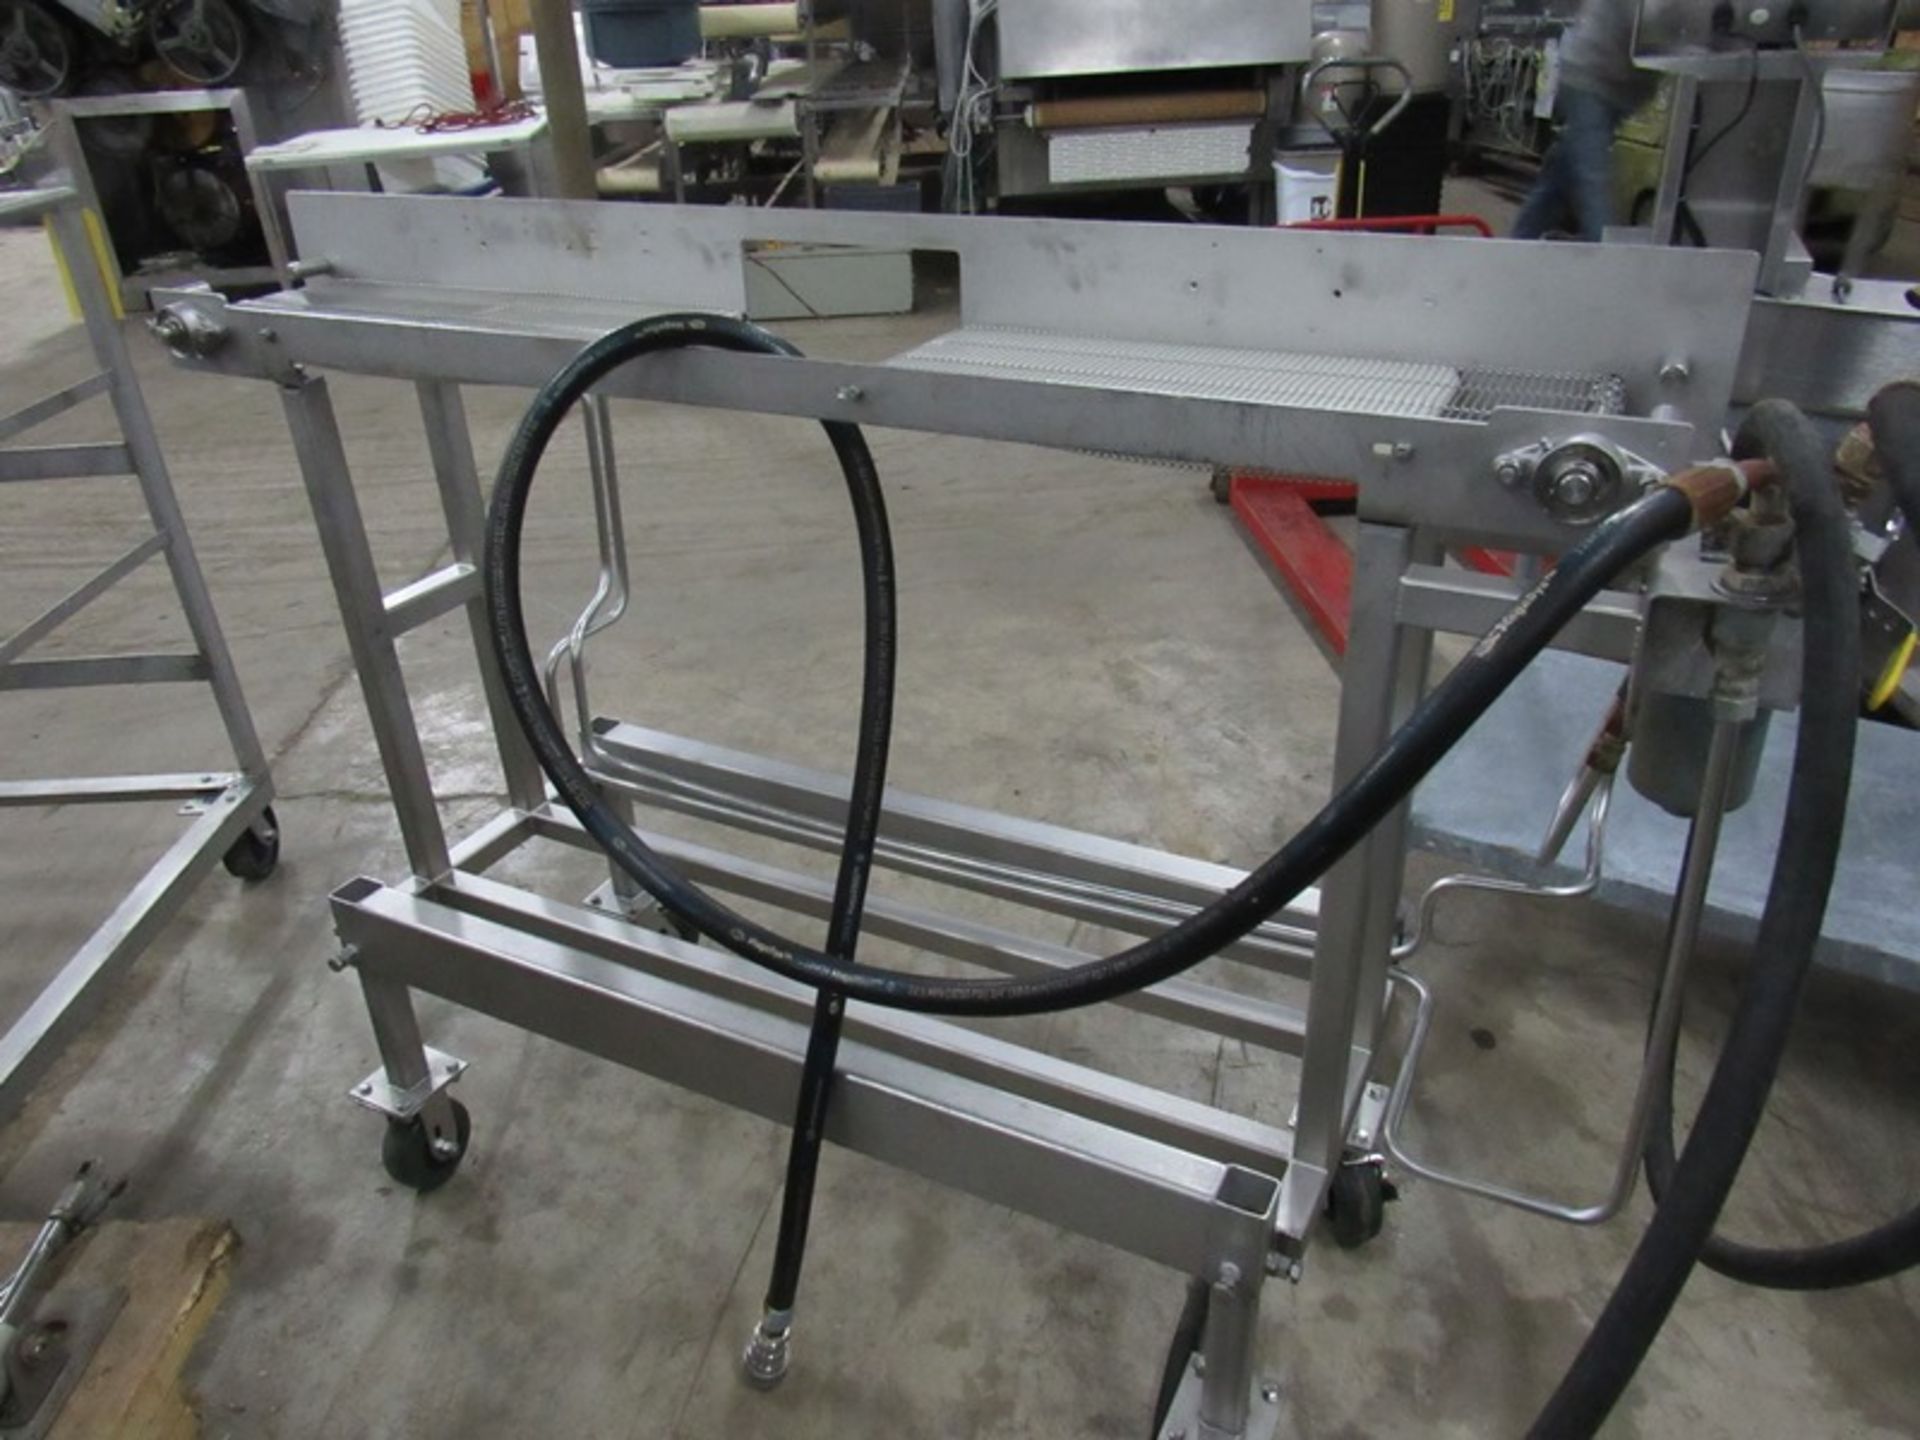 JBT Stainless Steel Conveyor, Ser. #120, 8" W X 5' L split belt, 10" between belts, hydraulic drive - Image 2 of 5